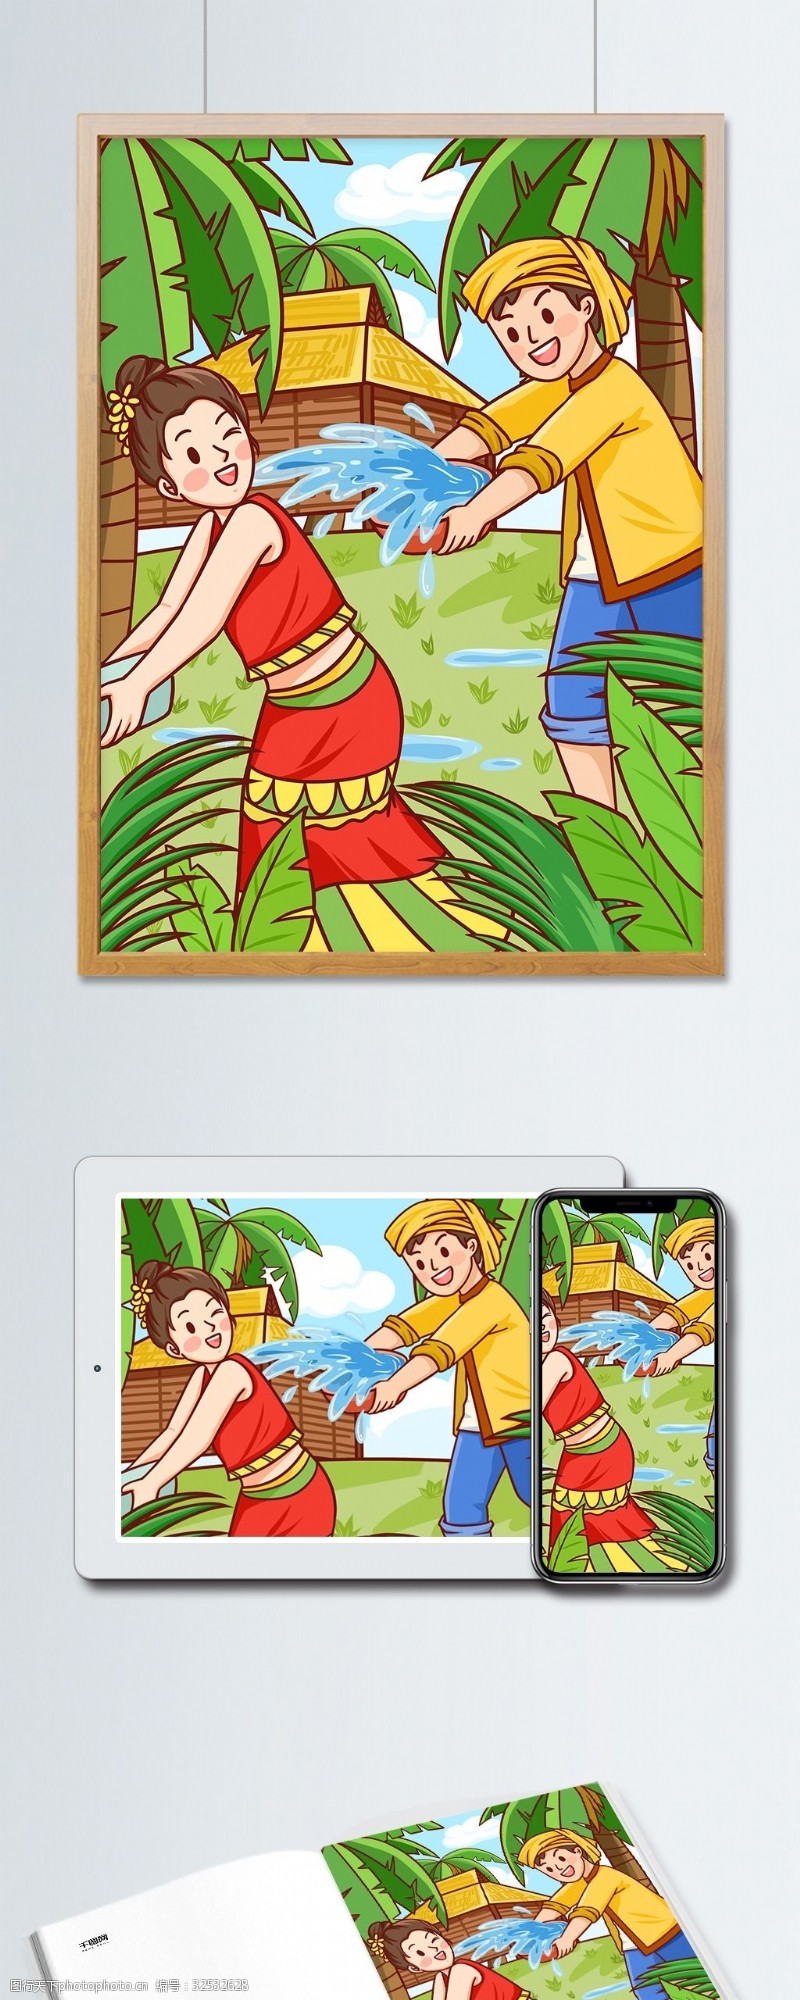 公众号用图传统节日泼水节傣族男女青年泼水玩乐插画